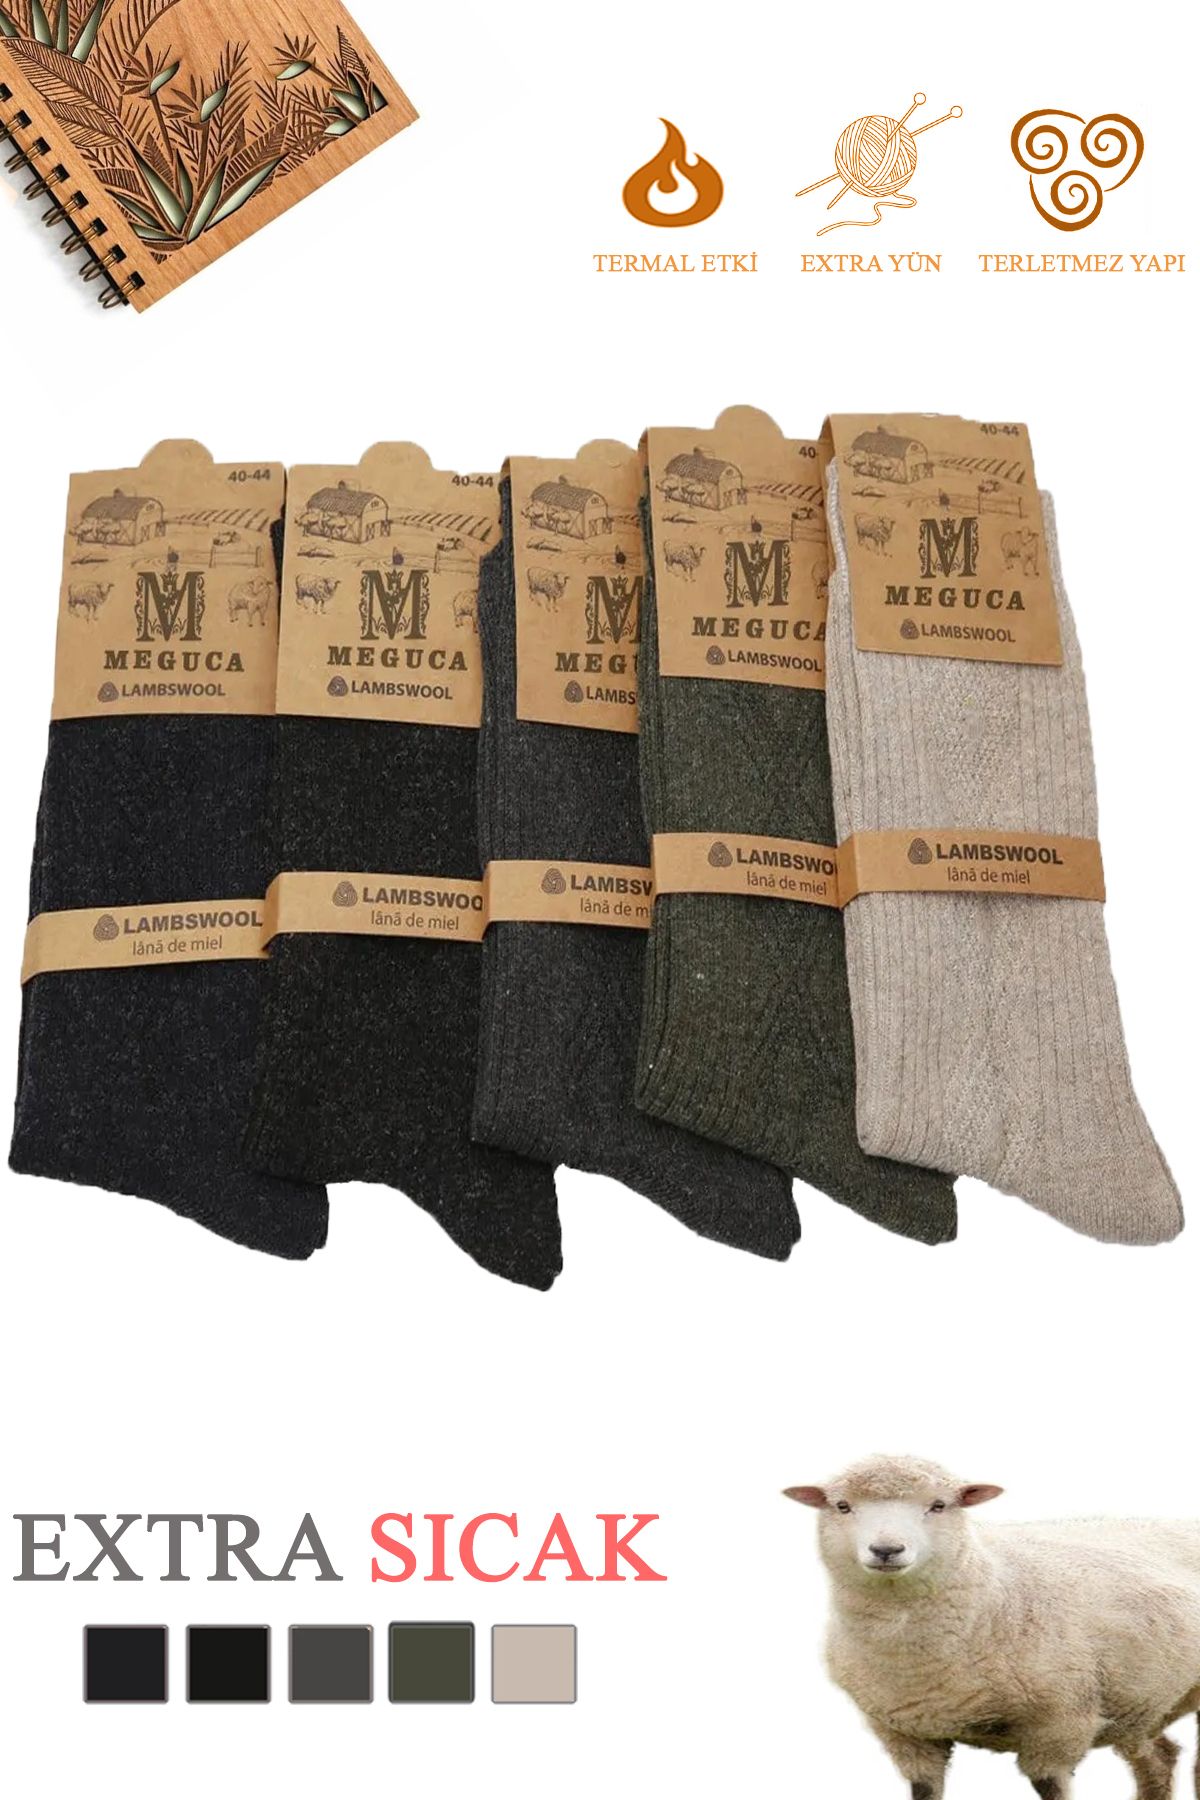 Meguca Socks Erkek Ve Kadın Kışlık Ekstra Sıcak Lambswool Yün Çorap Seti 5 Çift